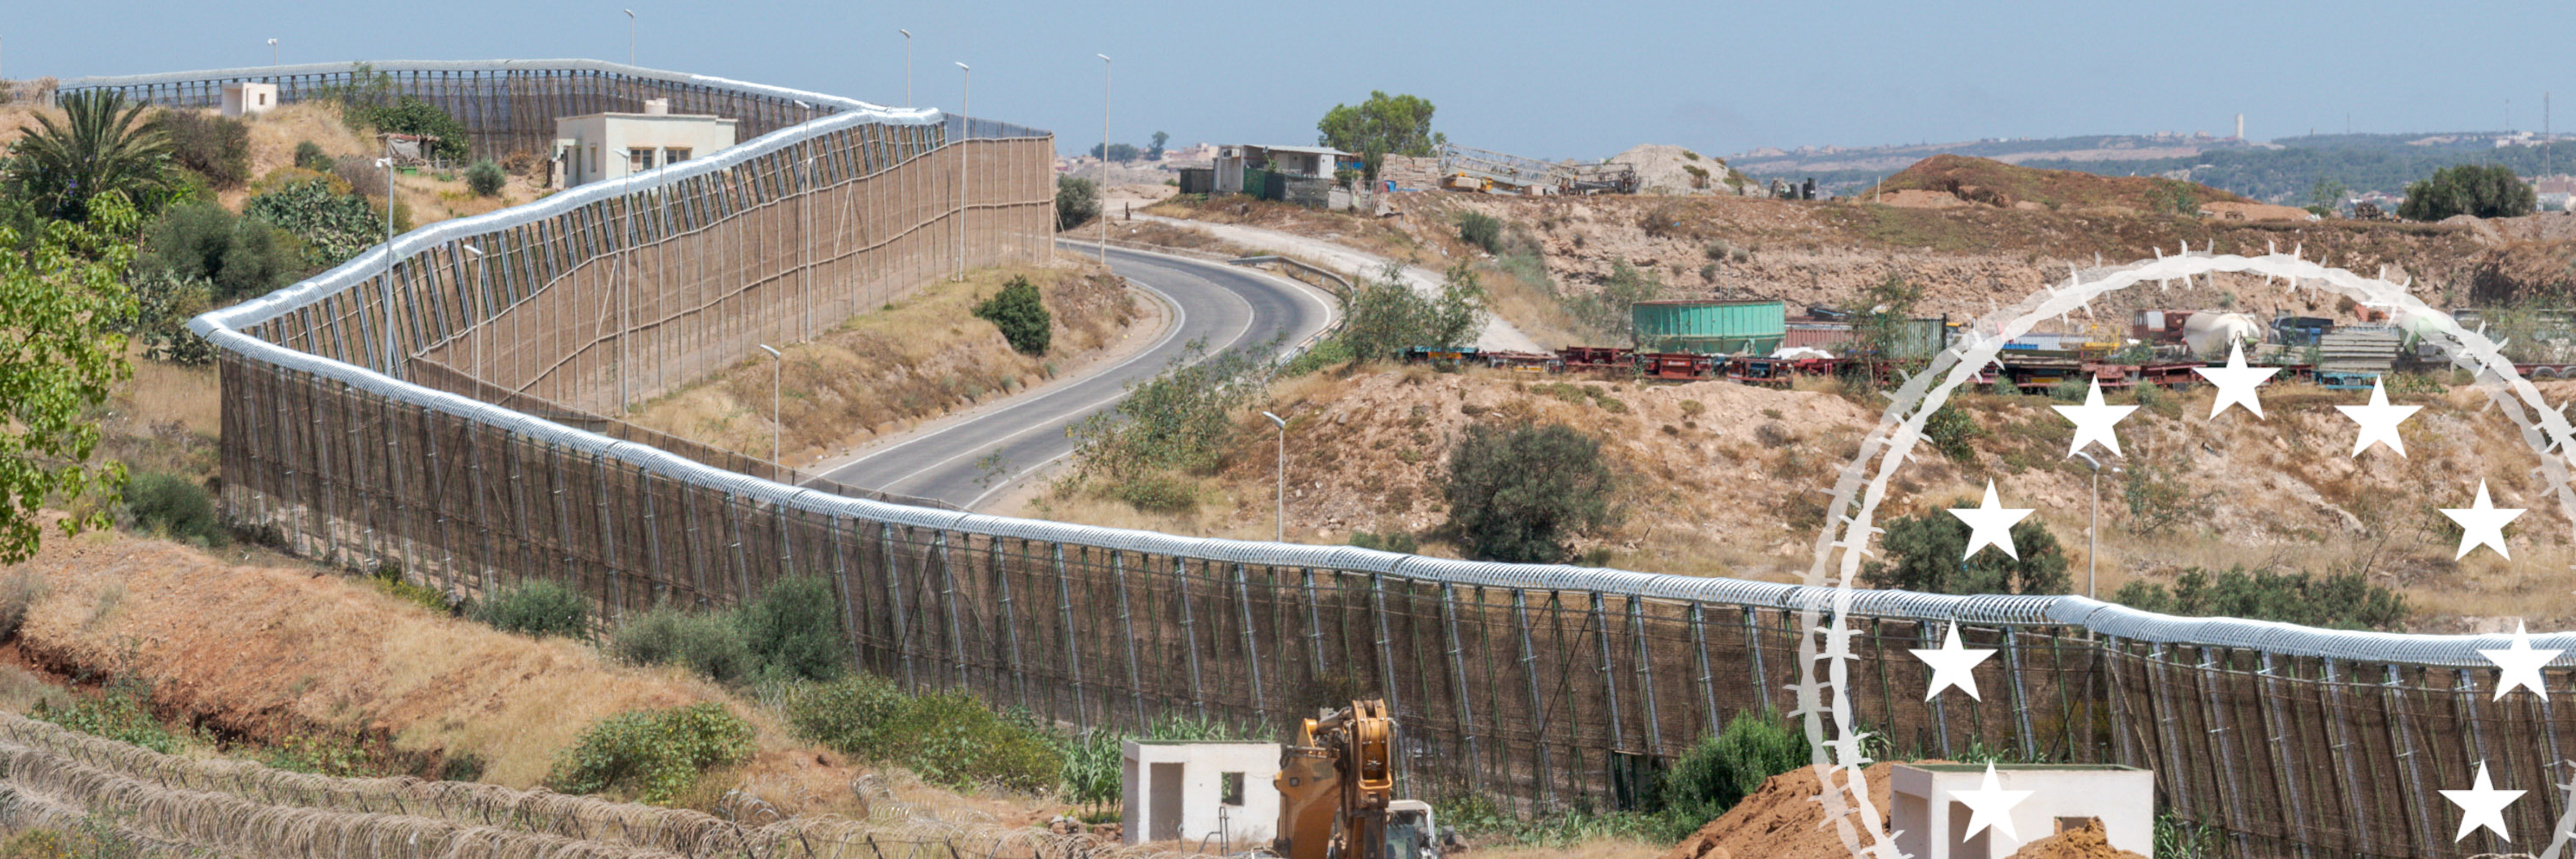 29. Juni 2022, Nador, Marokko: Blick auf die Grenze zwischen Nador und Melilla.